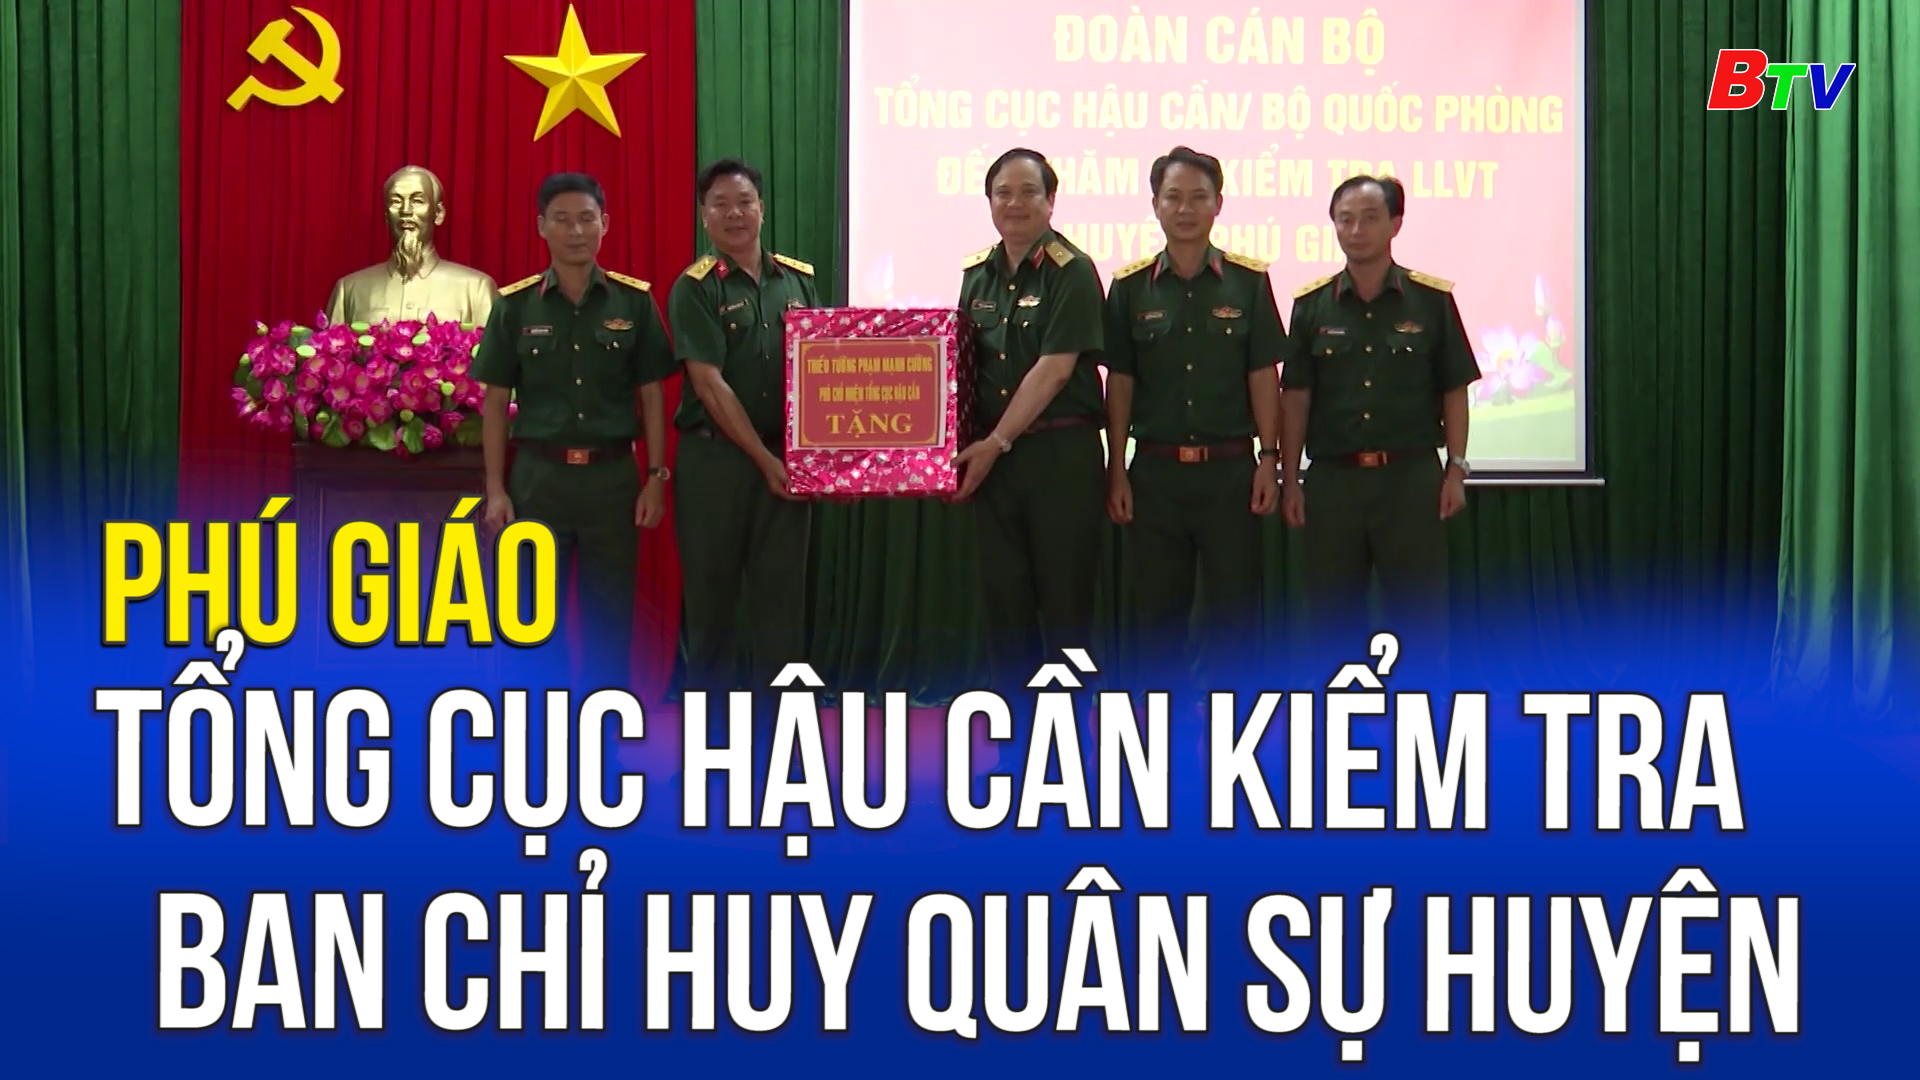 Phú Giáo - Tổng Cục hậu cần kiểm tra Ban chỉ huy quân sự huyện